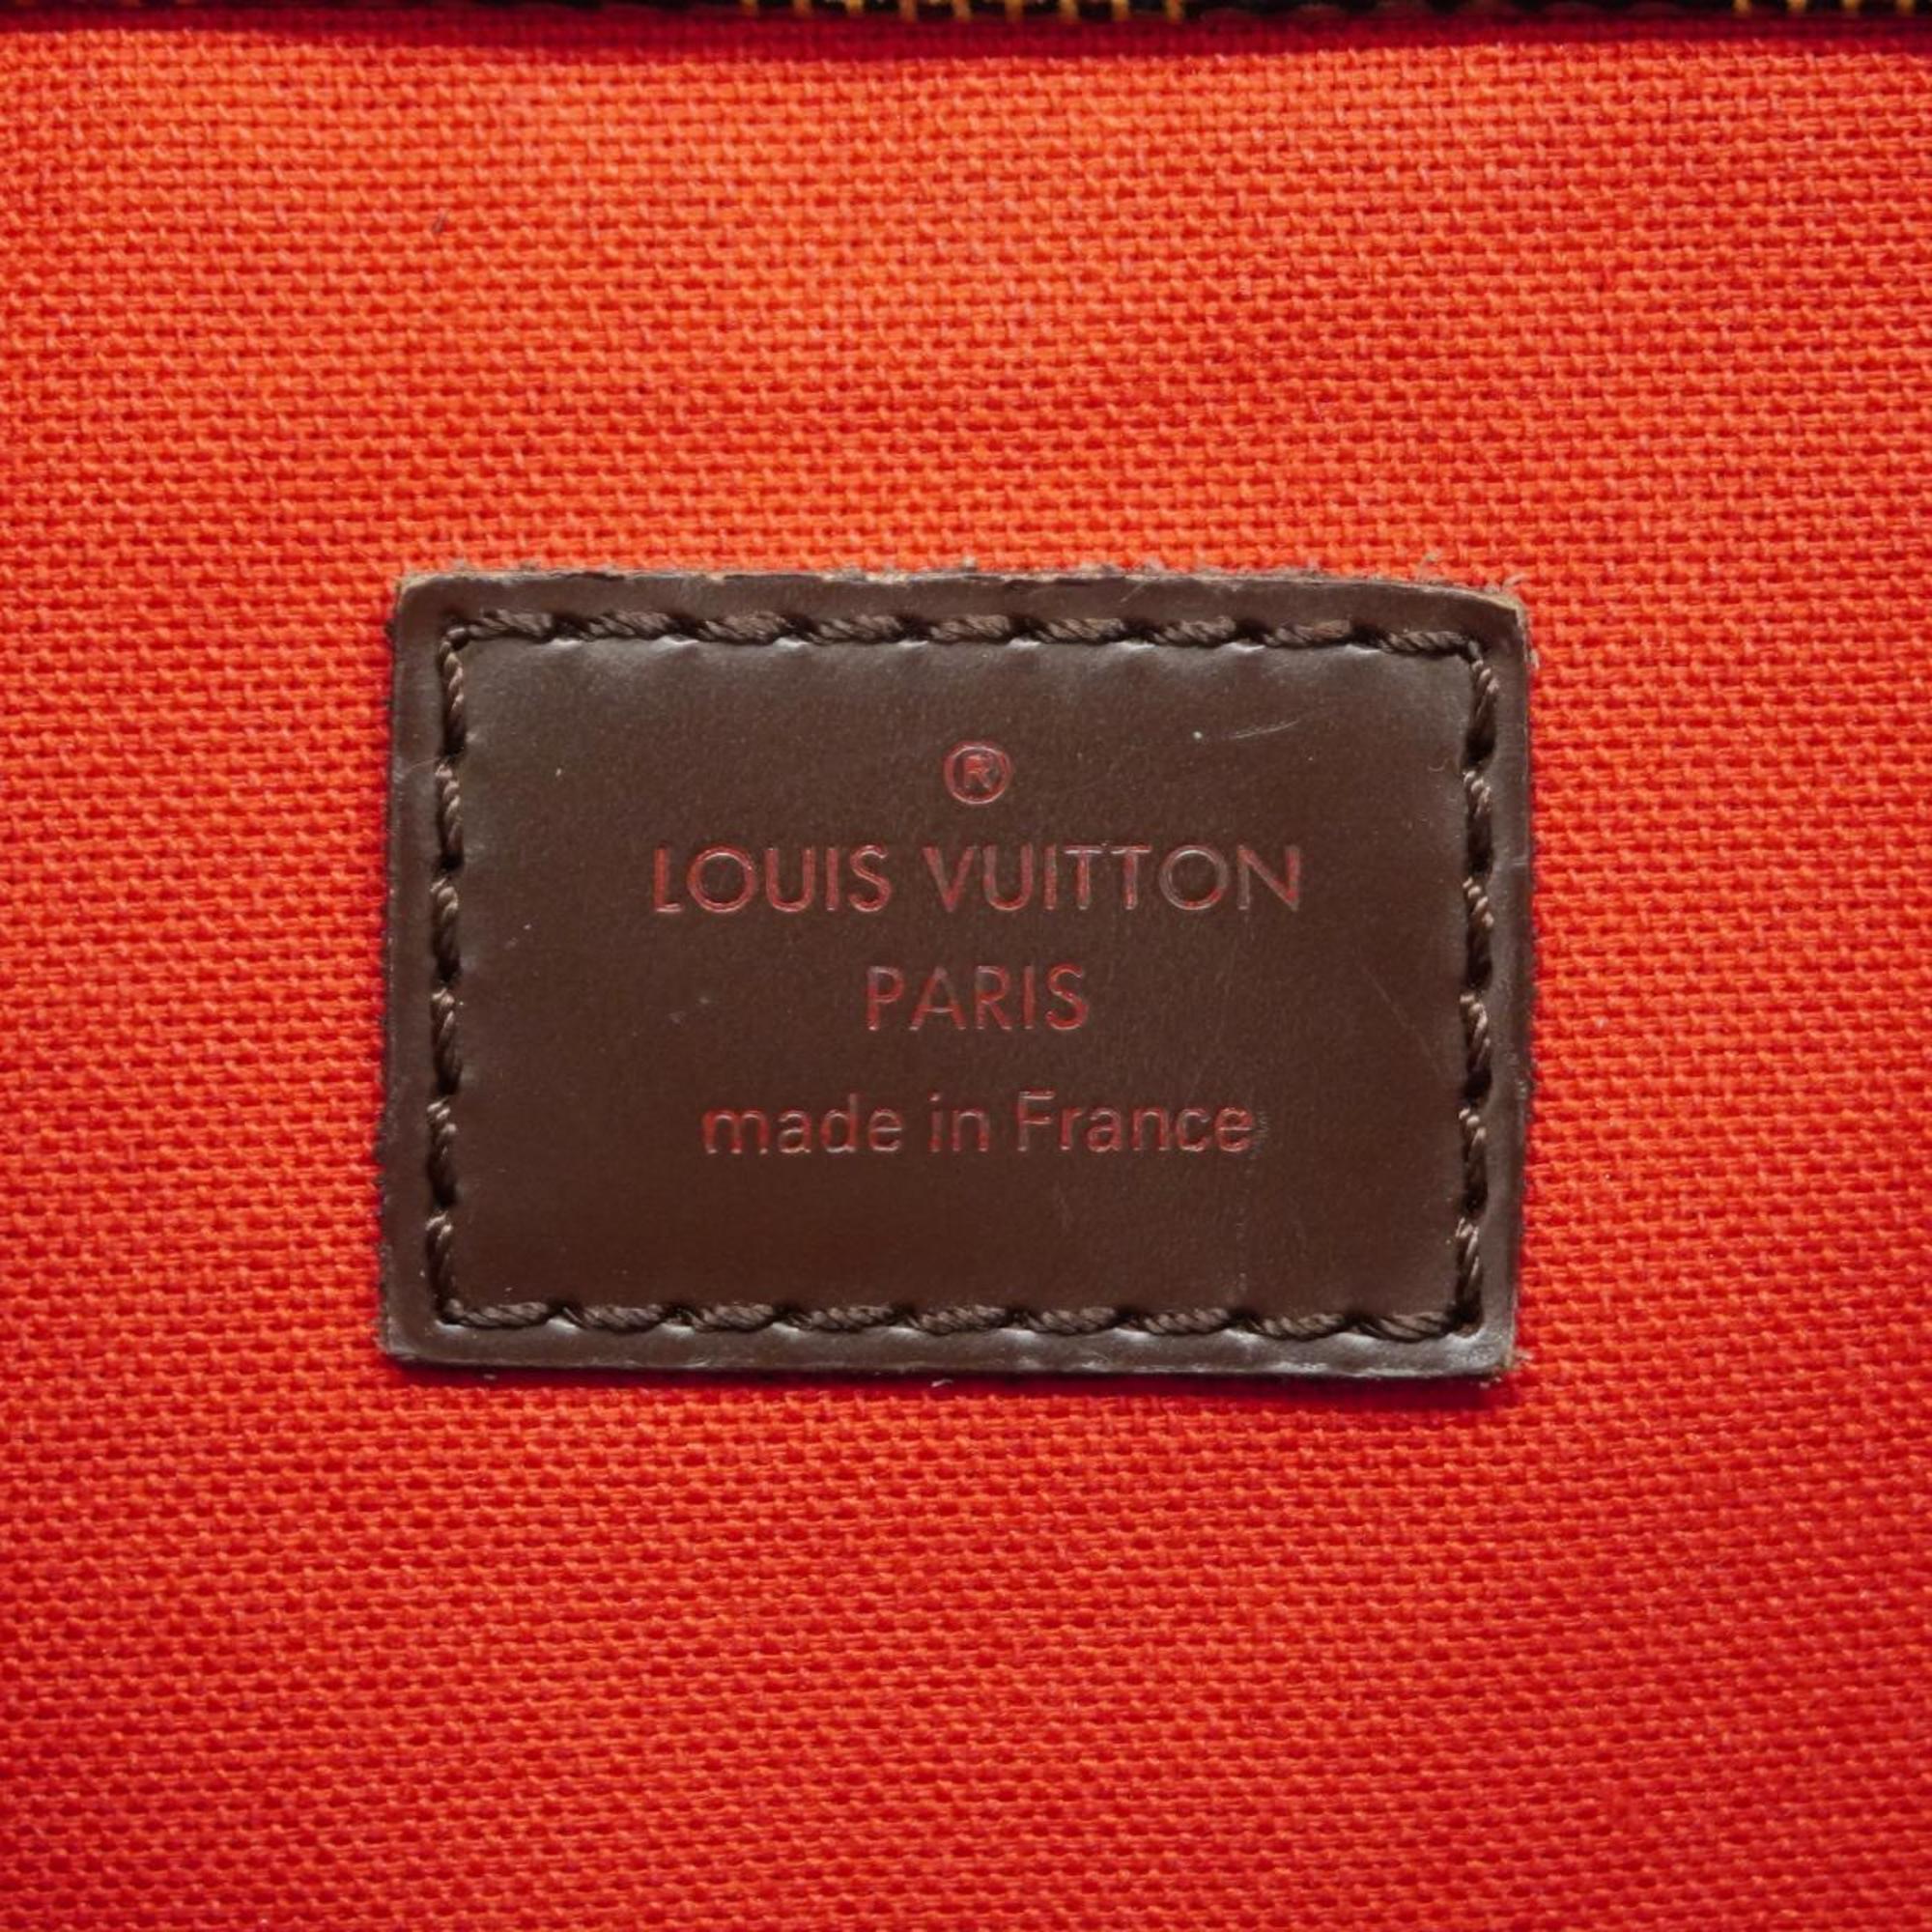 ルイ・ヴィトン(Louis Vuitton) ルイ・ヴィトン ショルダーバッグ ダミエ ブルームズベリPM N42251 エベヌレディース